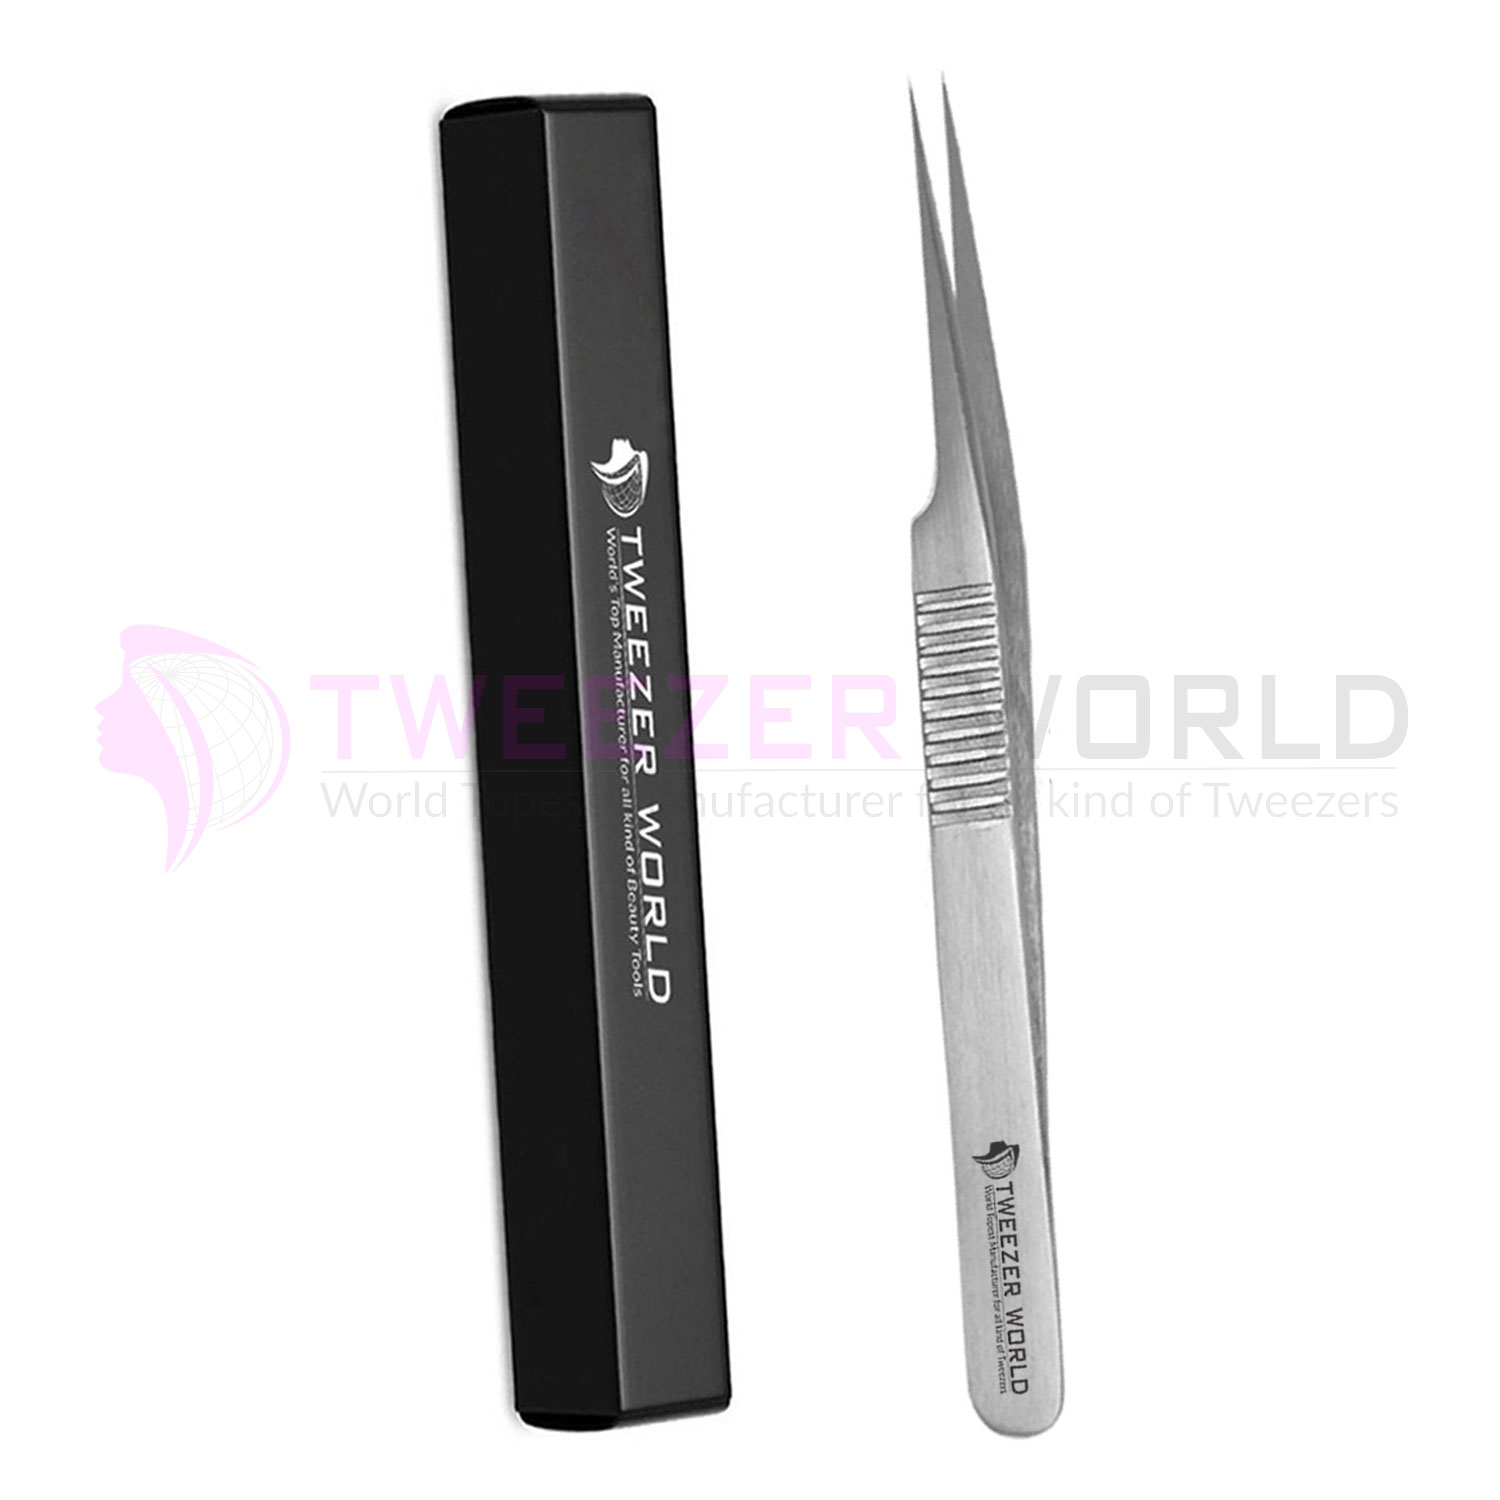 Serrated Handle Pro best Eyelash Extension Tweezers Straight Tweezers